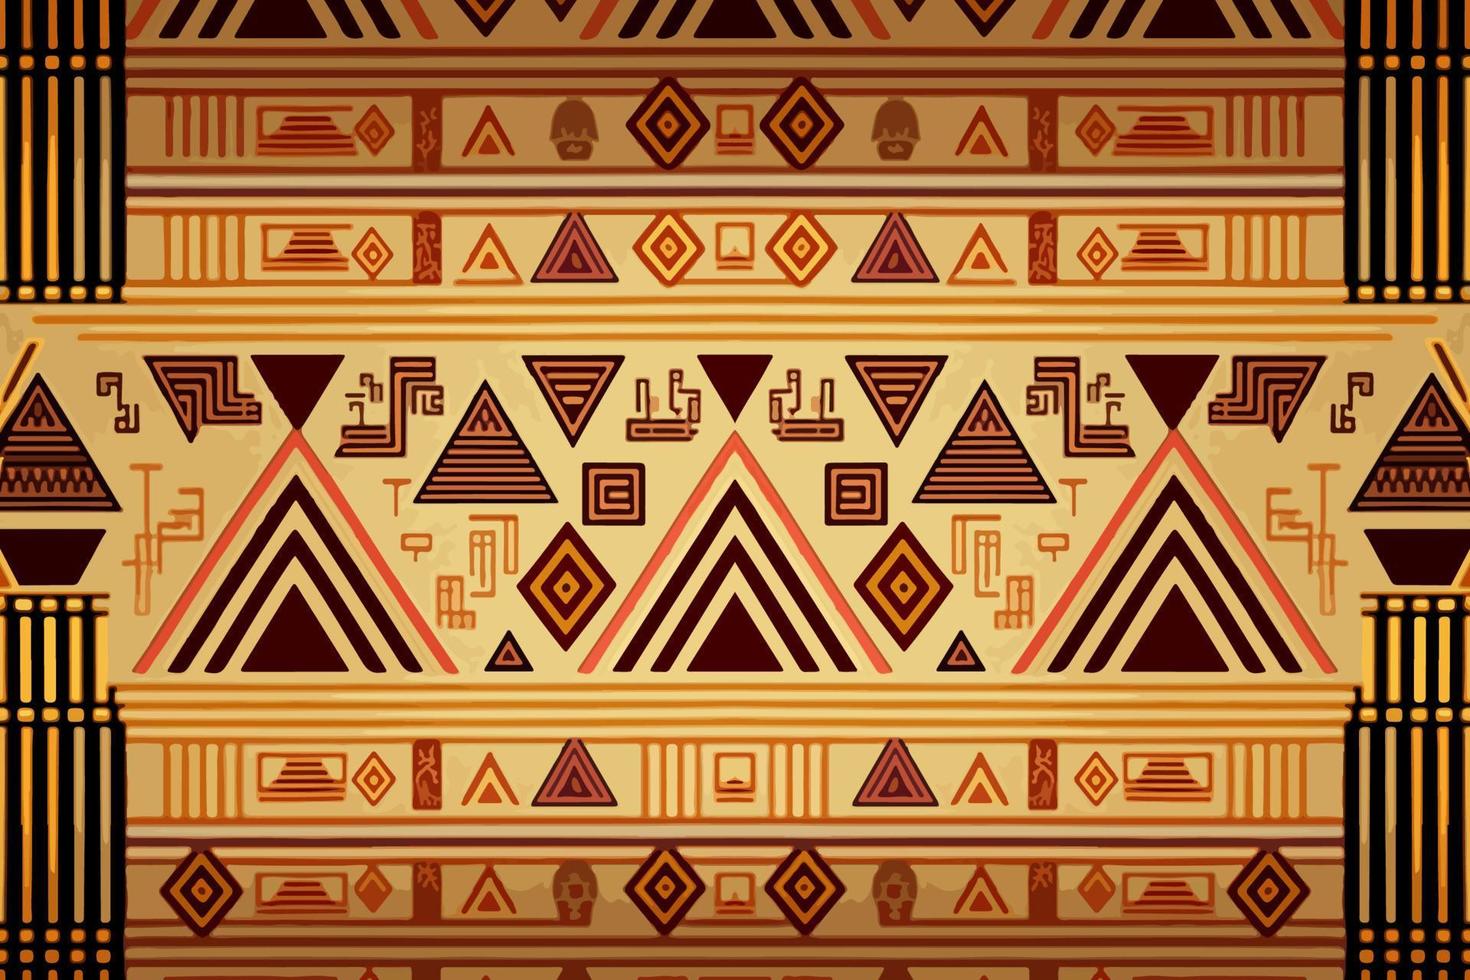 égyptien hiéroglyphes ethnique modèle. abstrait traditionnel populaire antique tribal zigzag graphique doubler. texture textile en tissu ethnique égyptien motifs vecteur. fleuri élégant luxe ancien rétro style. vecteur